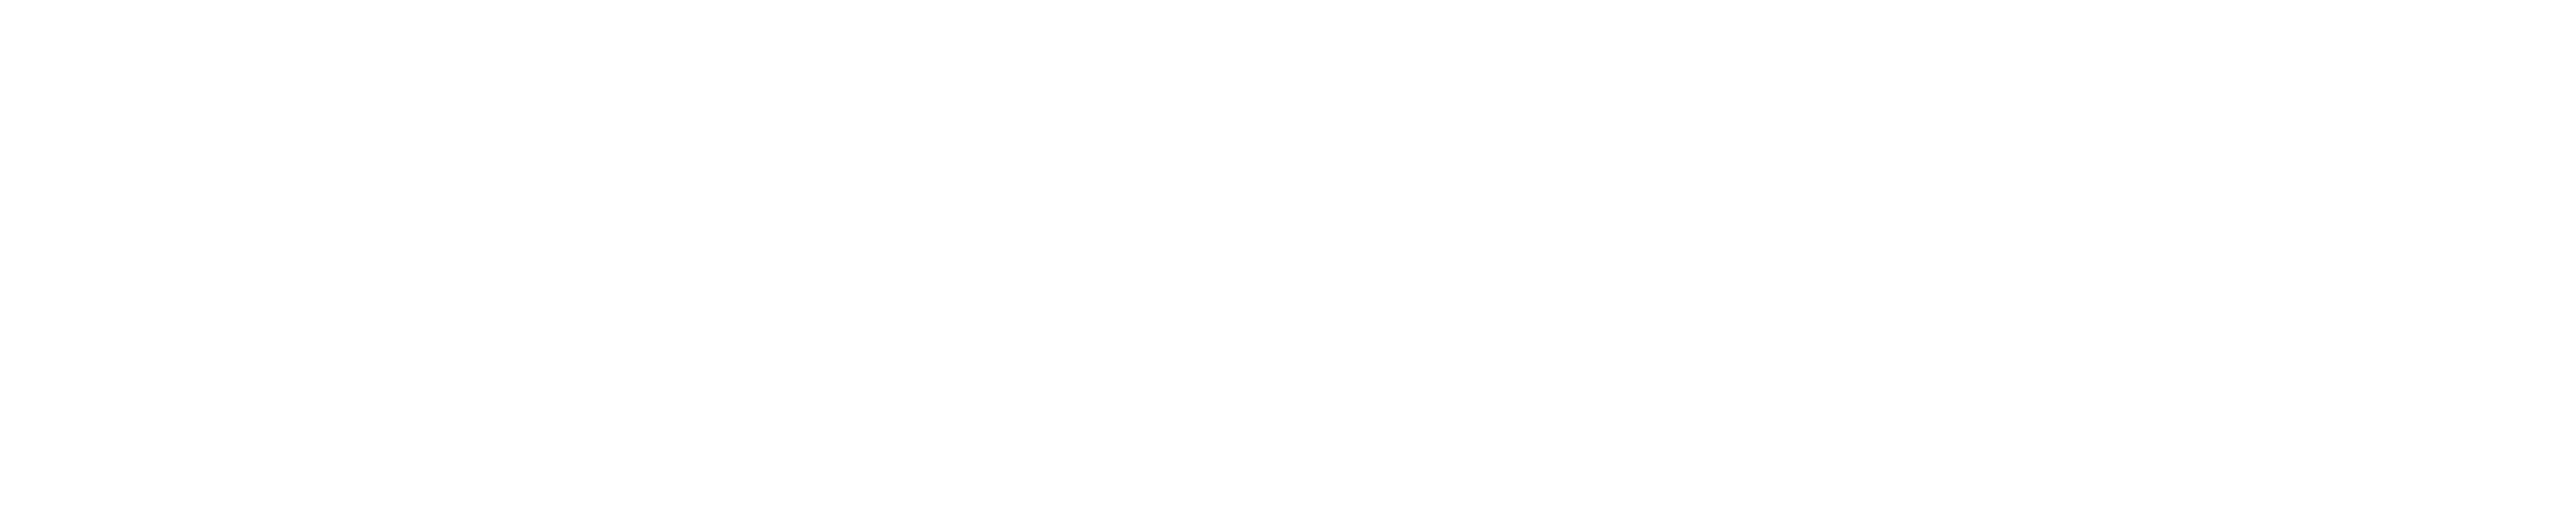 logo metikam stone white